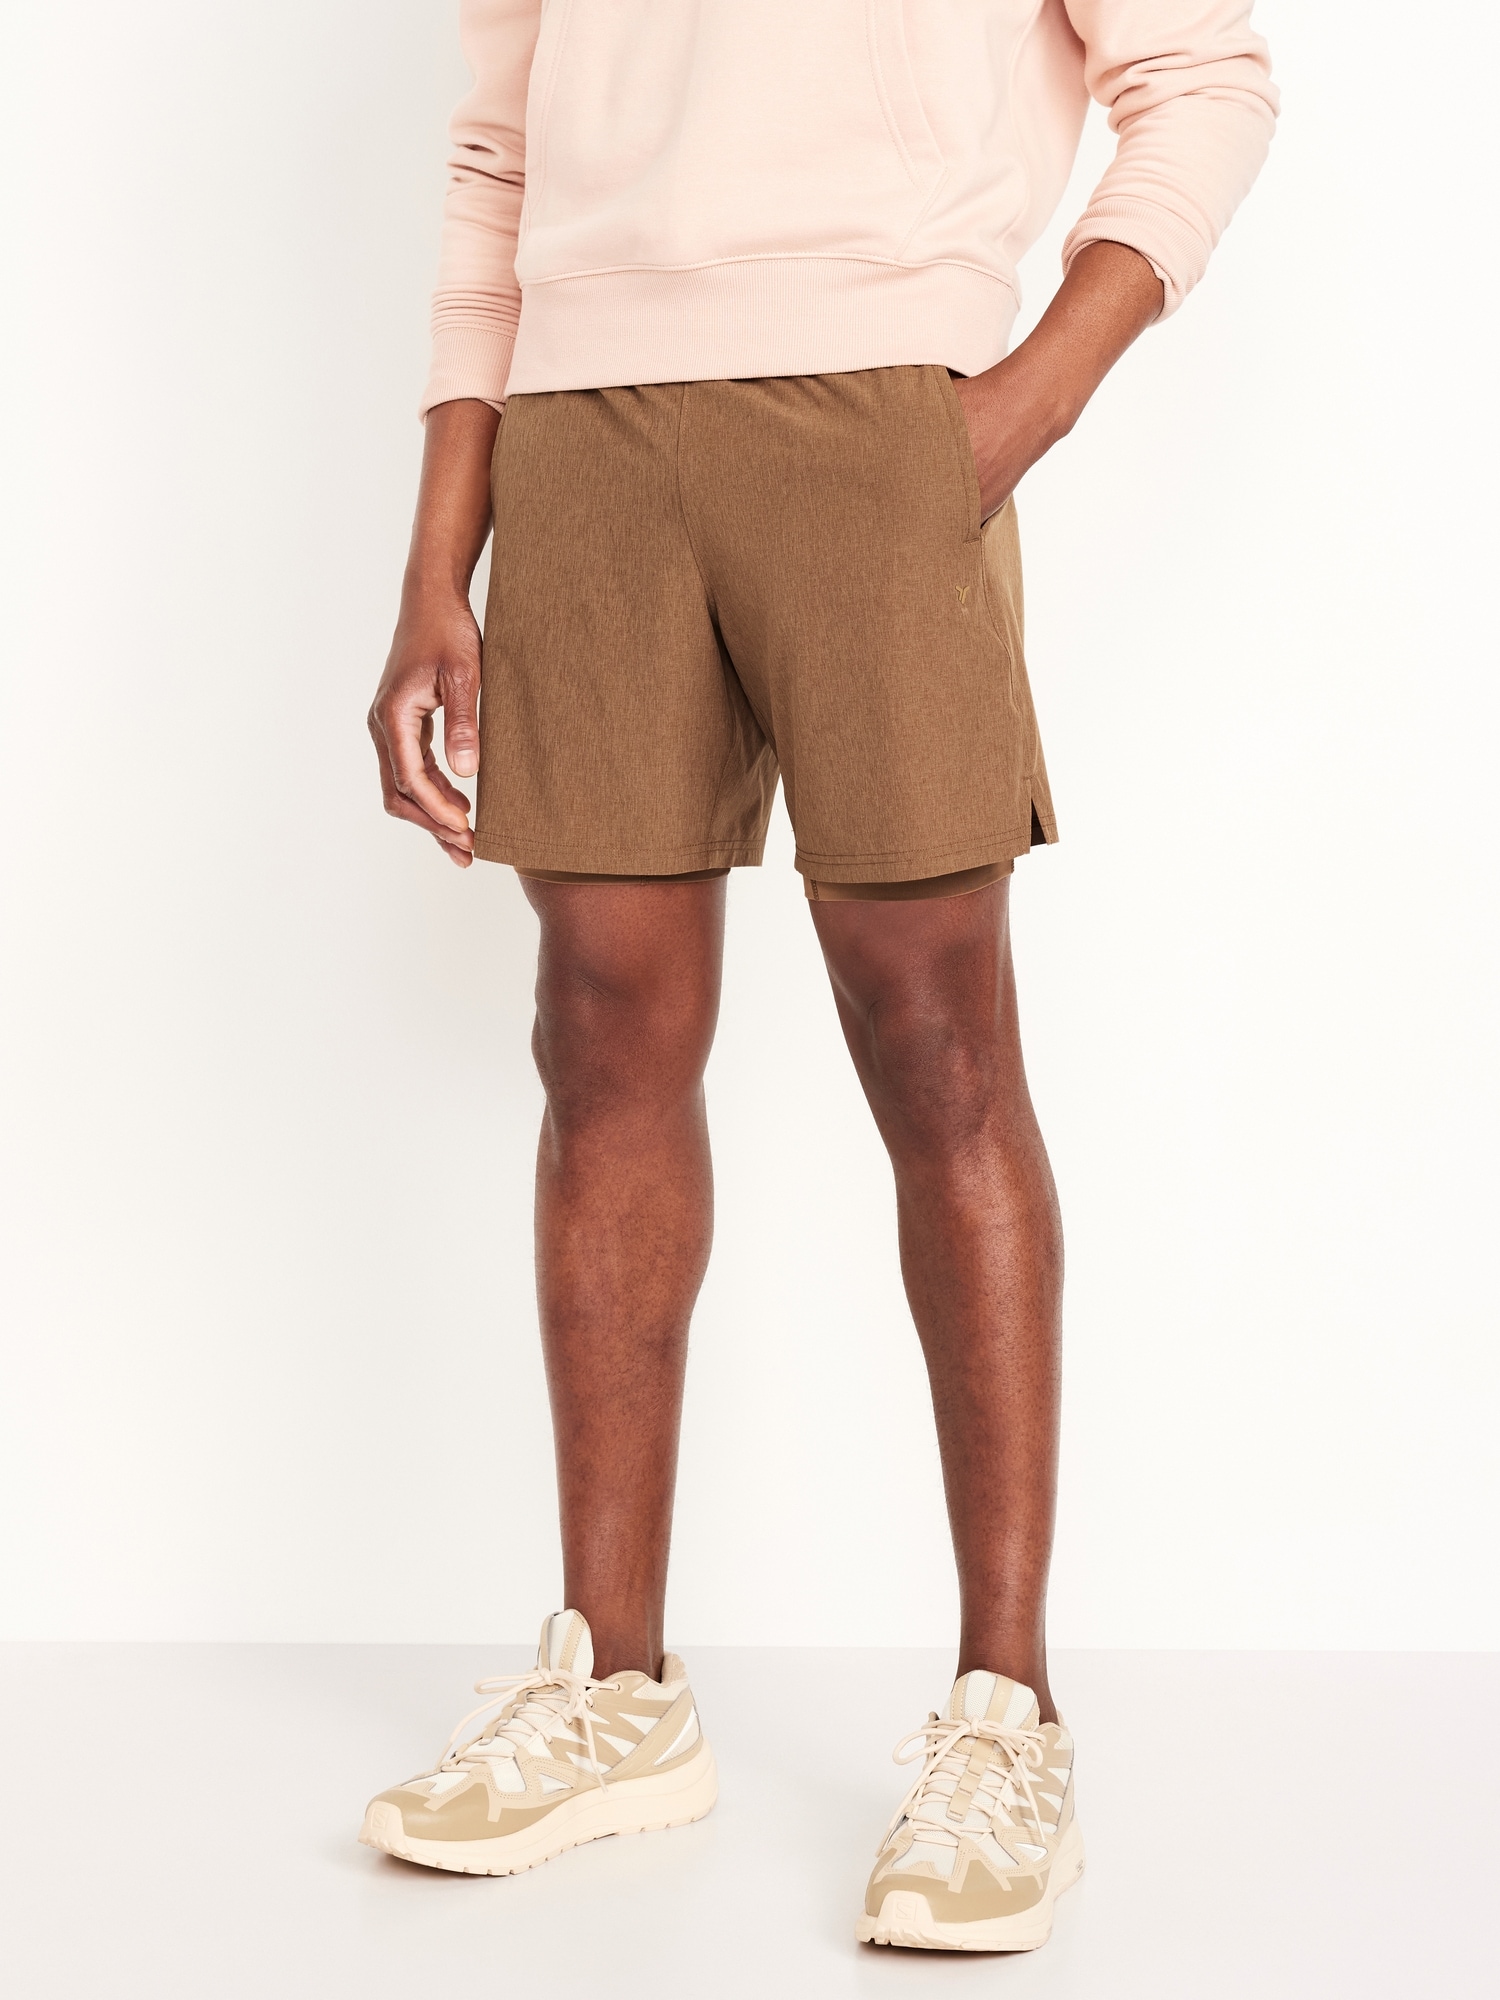 StretchTech Shorts -- 7-inch inseam